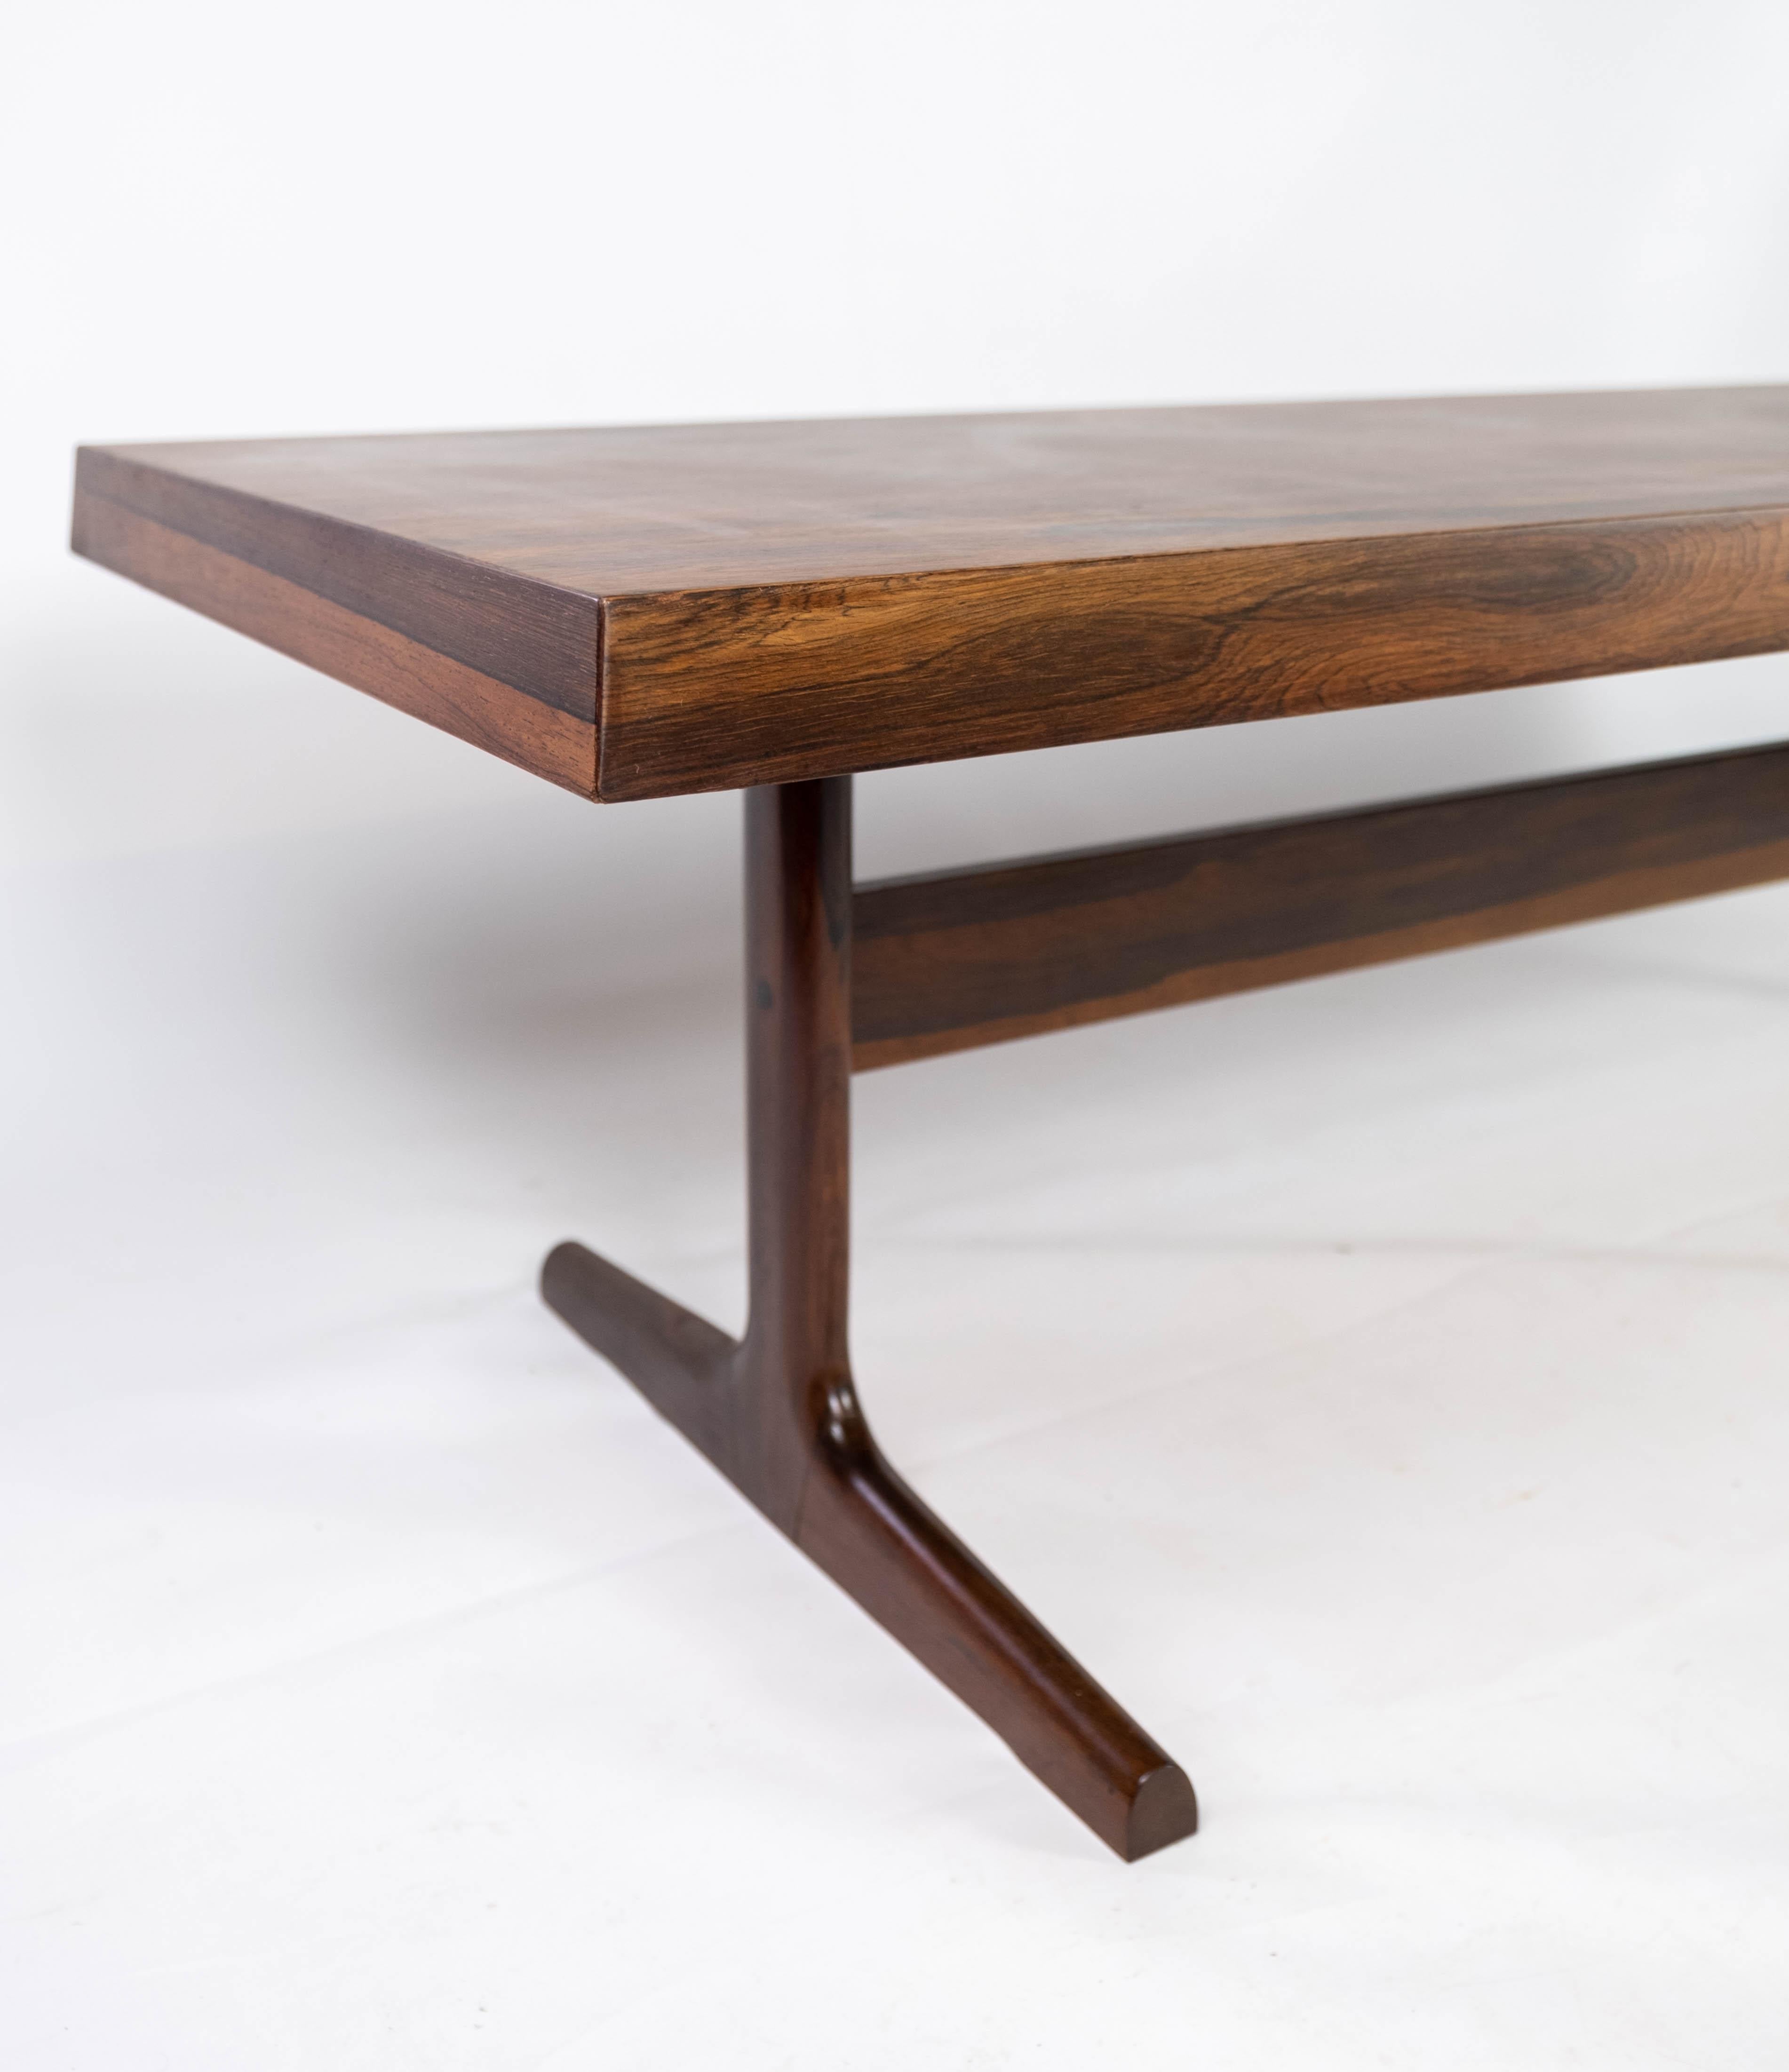 Cette table basse en bois de rose incarne l'élégance et le savoir-faire du design danois des années 1960. Fabriqué avec précision et souci du détail, il présente un attrait intemporel qui ajoute de la sophistication à tout espace de vie.

Les tons